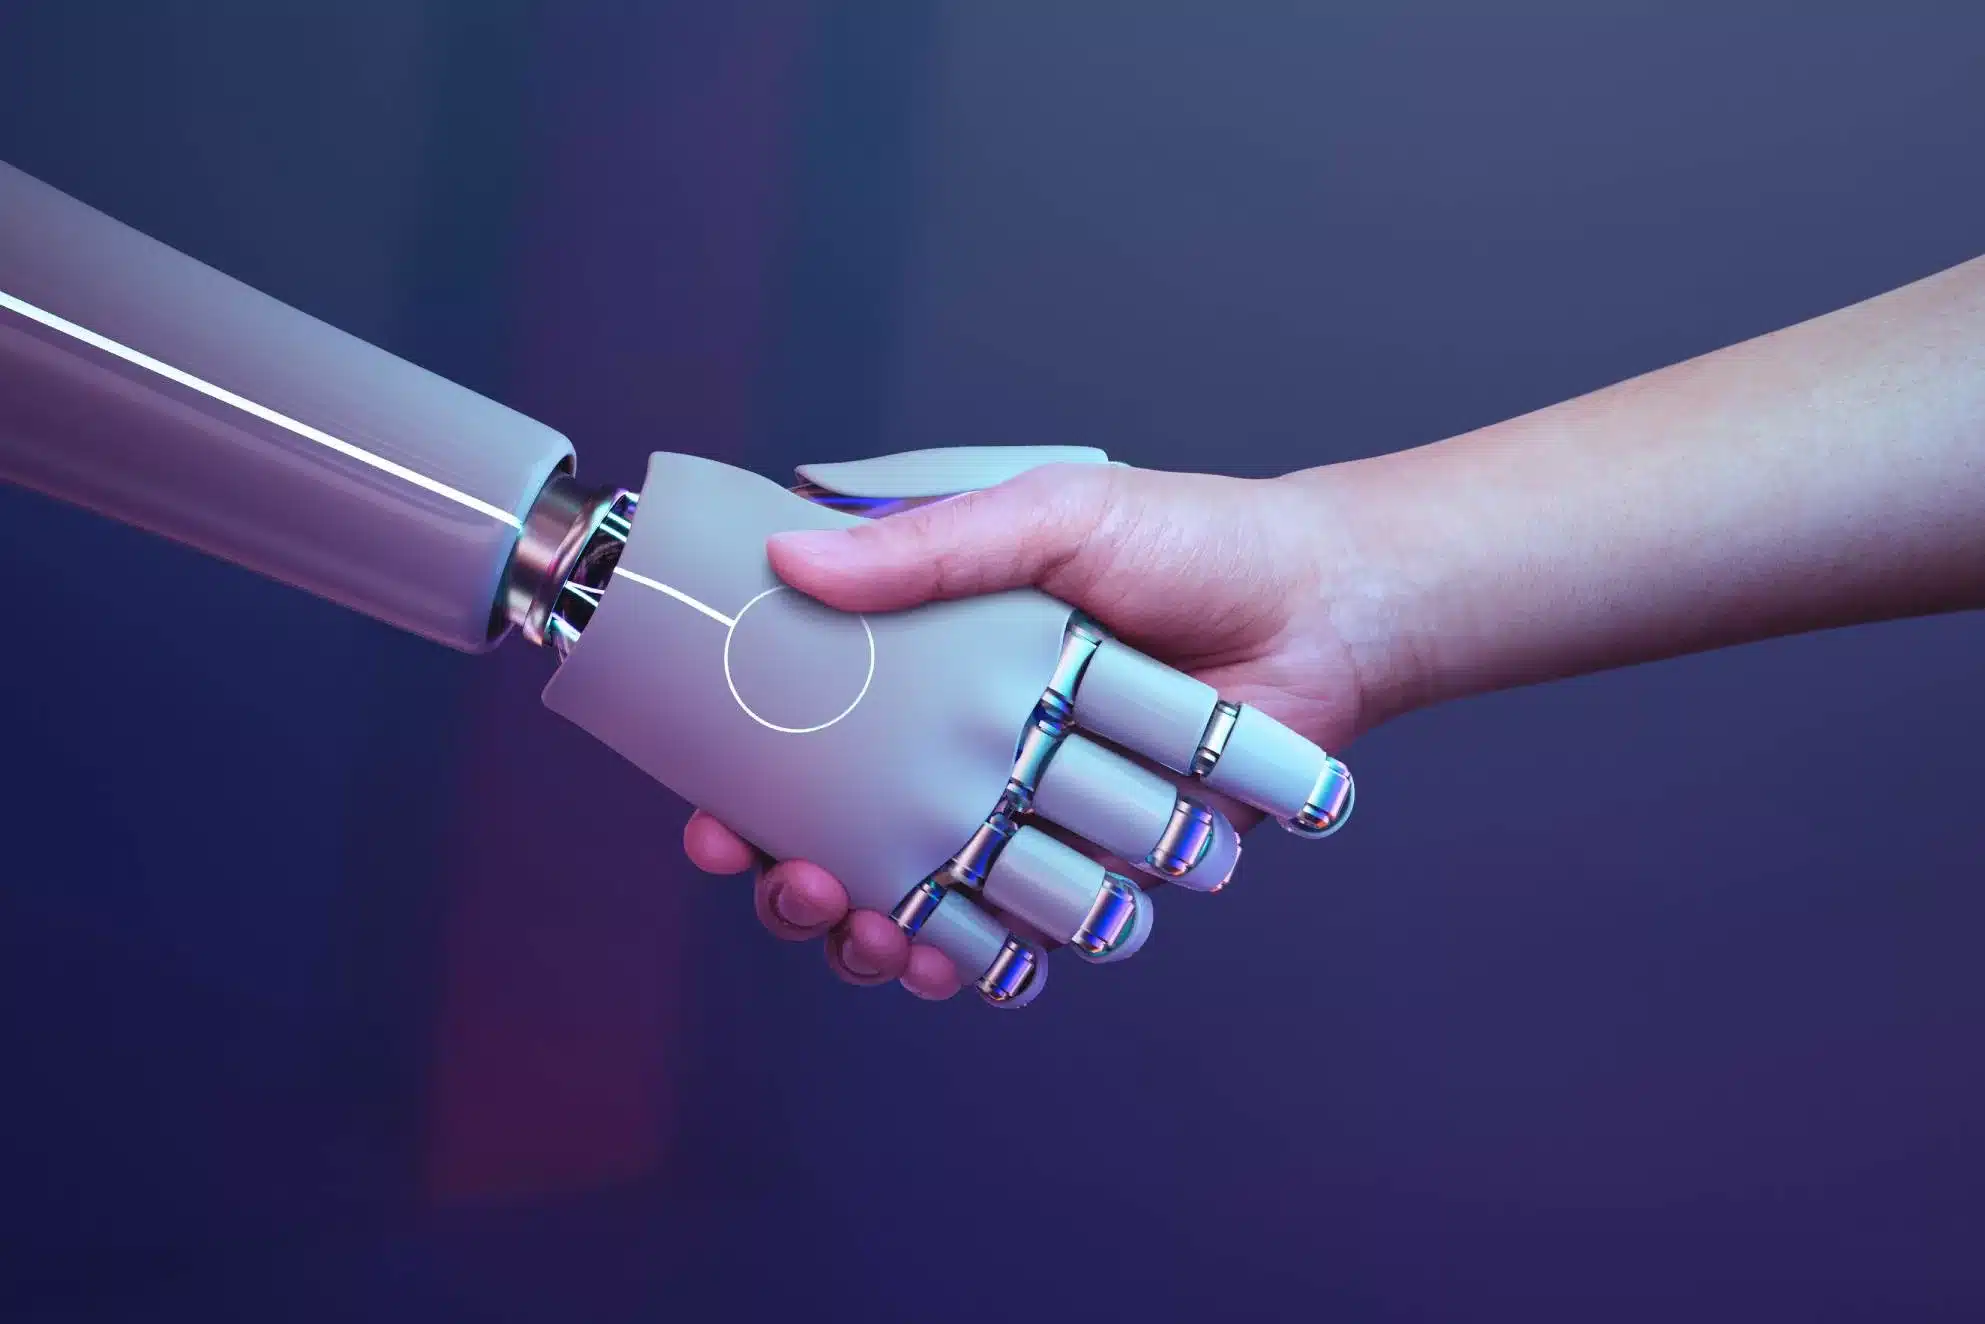 ľudská ruka si podáva ruku s robotom